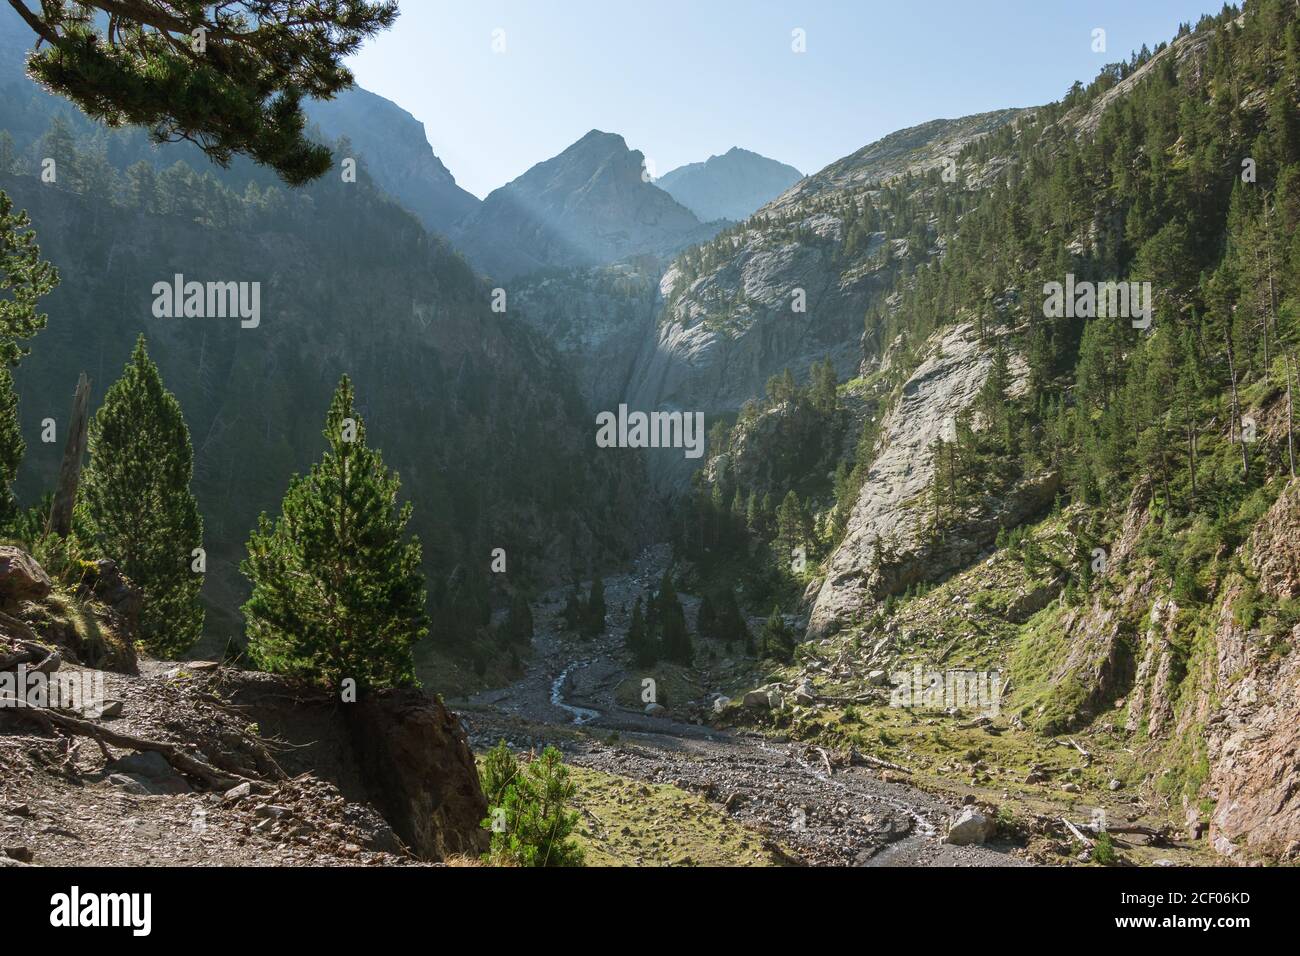 Une merveilleuse petite vallée apparaît après 2 heures de trekking. Bonne récompense pour le marcheur intrépide. Aragon, Espagne. Banque D'Images